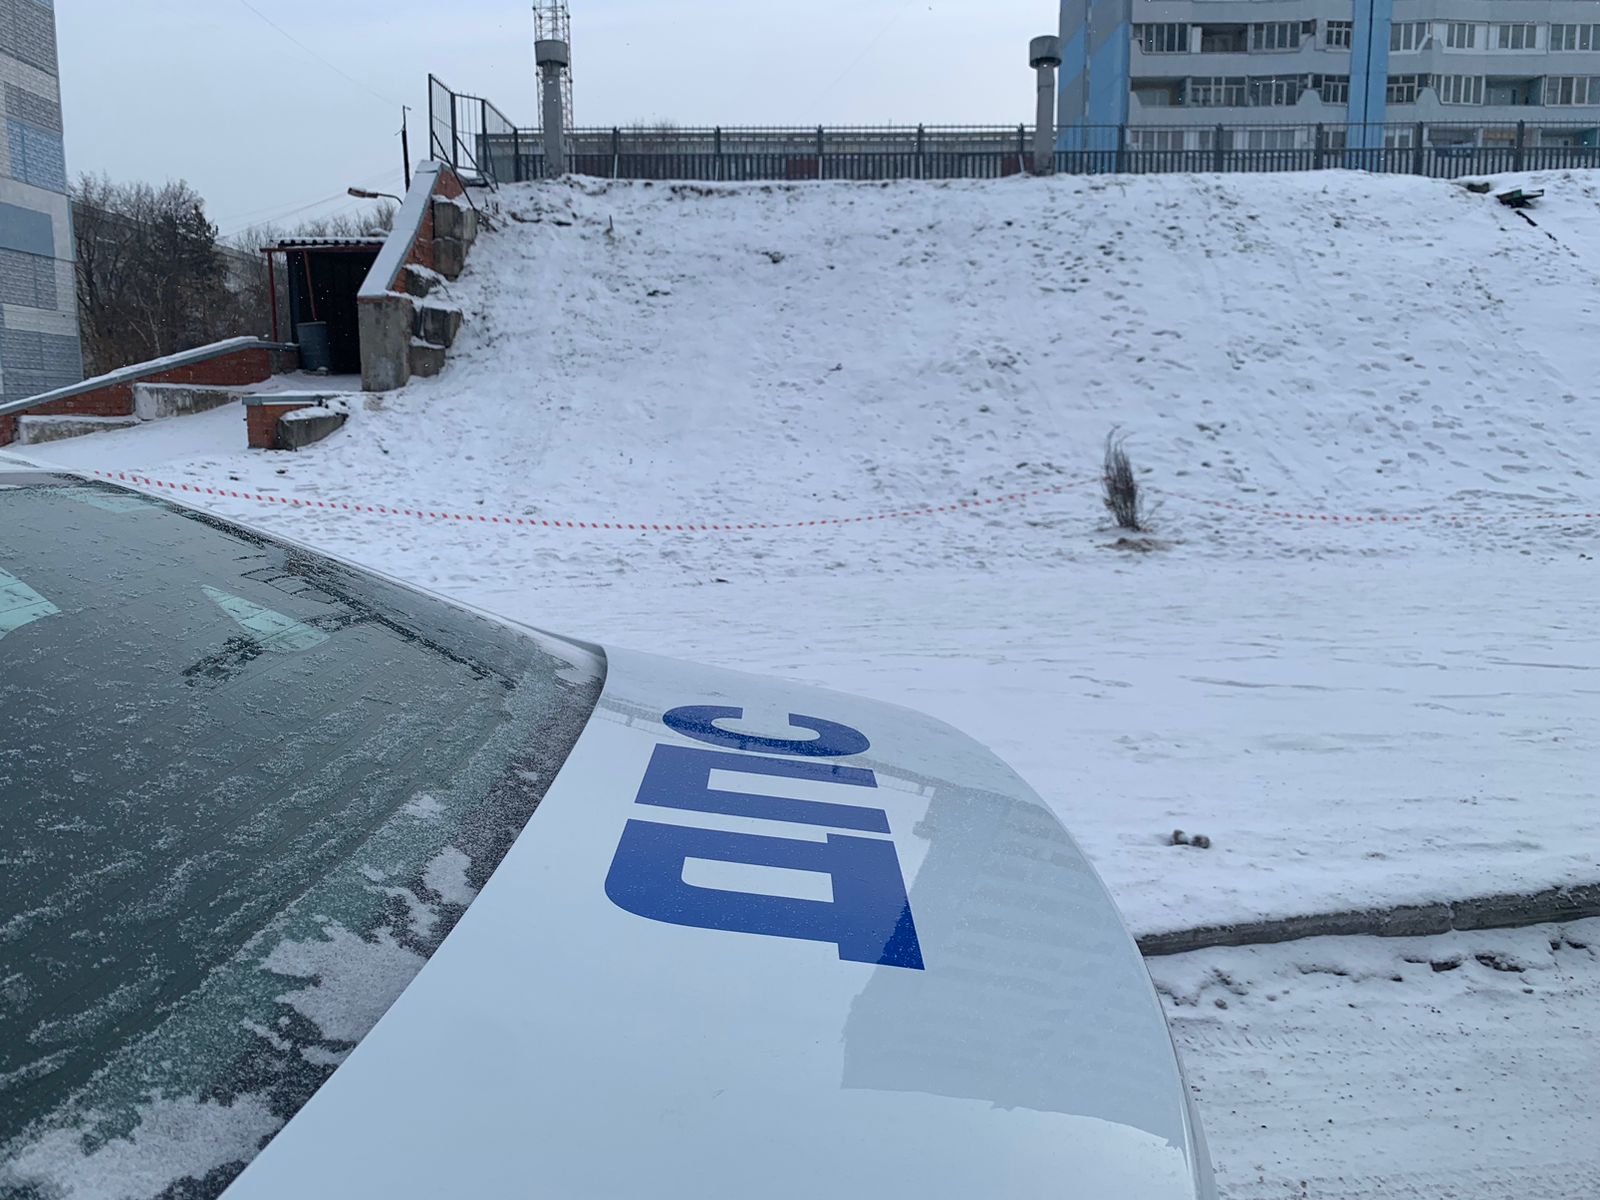 В Кемерове сотрудники ГИБДД ликвидируют места опасных зимних развлечений детей